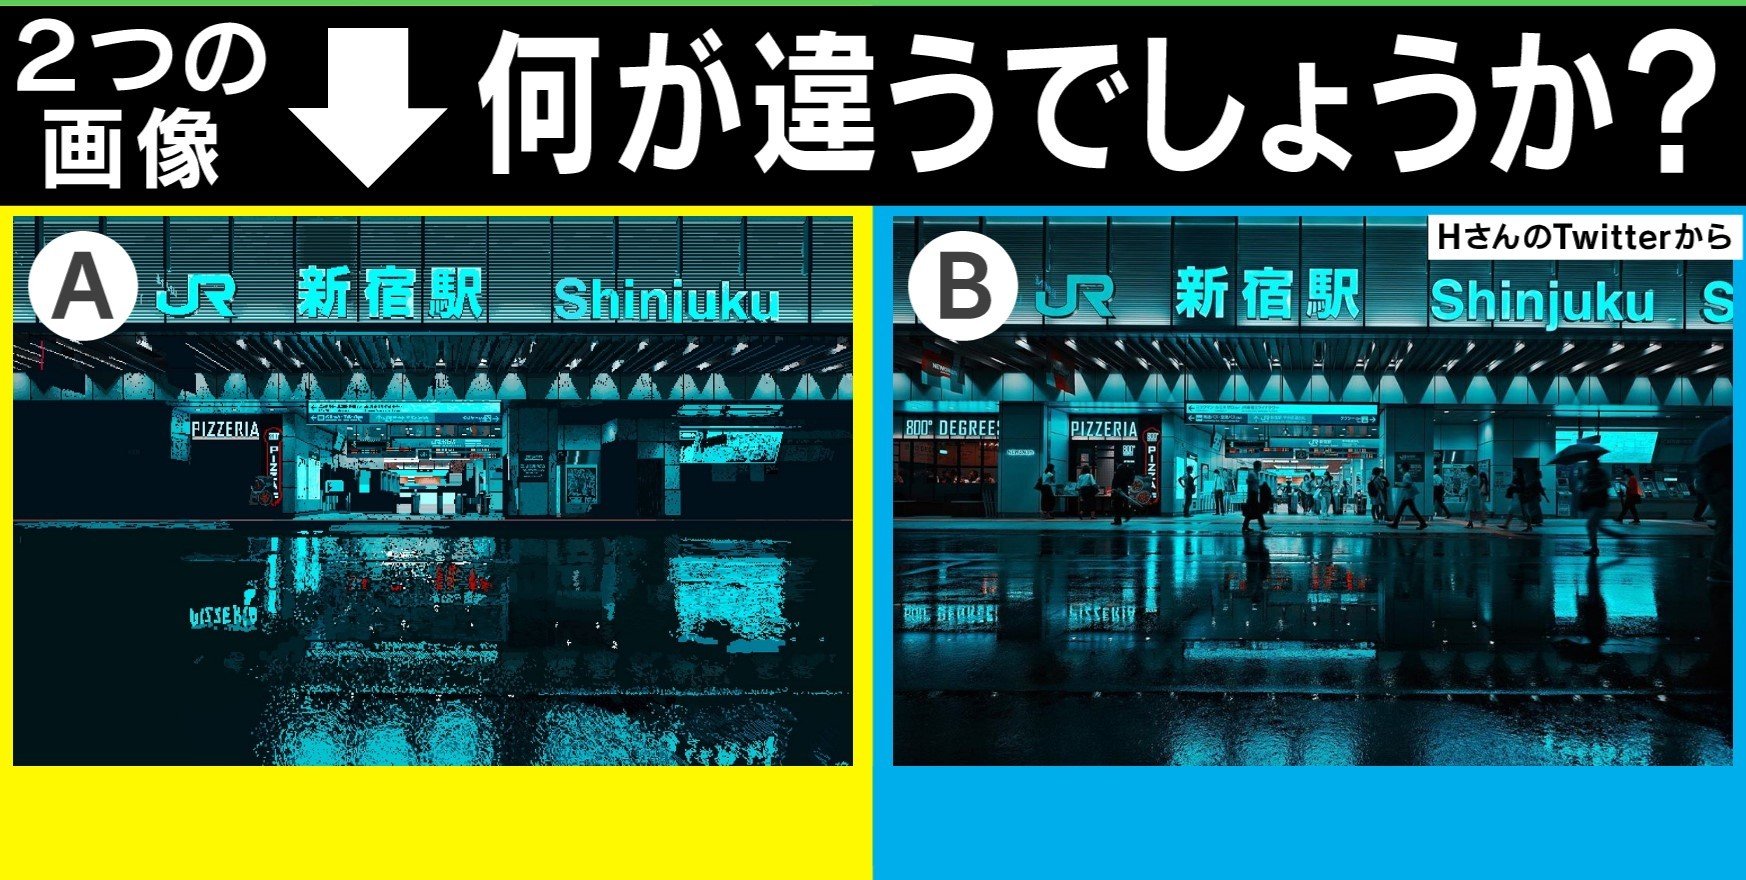 拡大して驚き ドット絵 で描かれたjr新宿駅の画像がtwitterで大反響 投稿者を直撃 国内 Abema Times